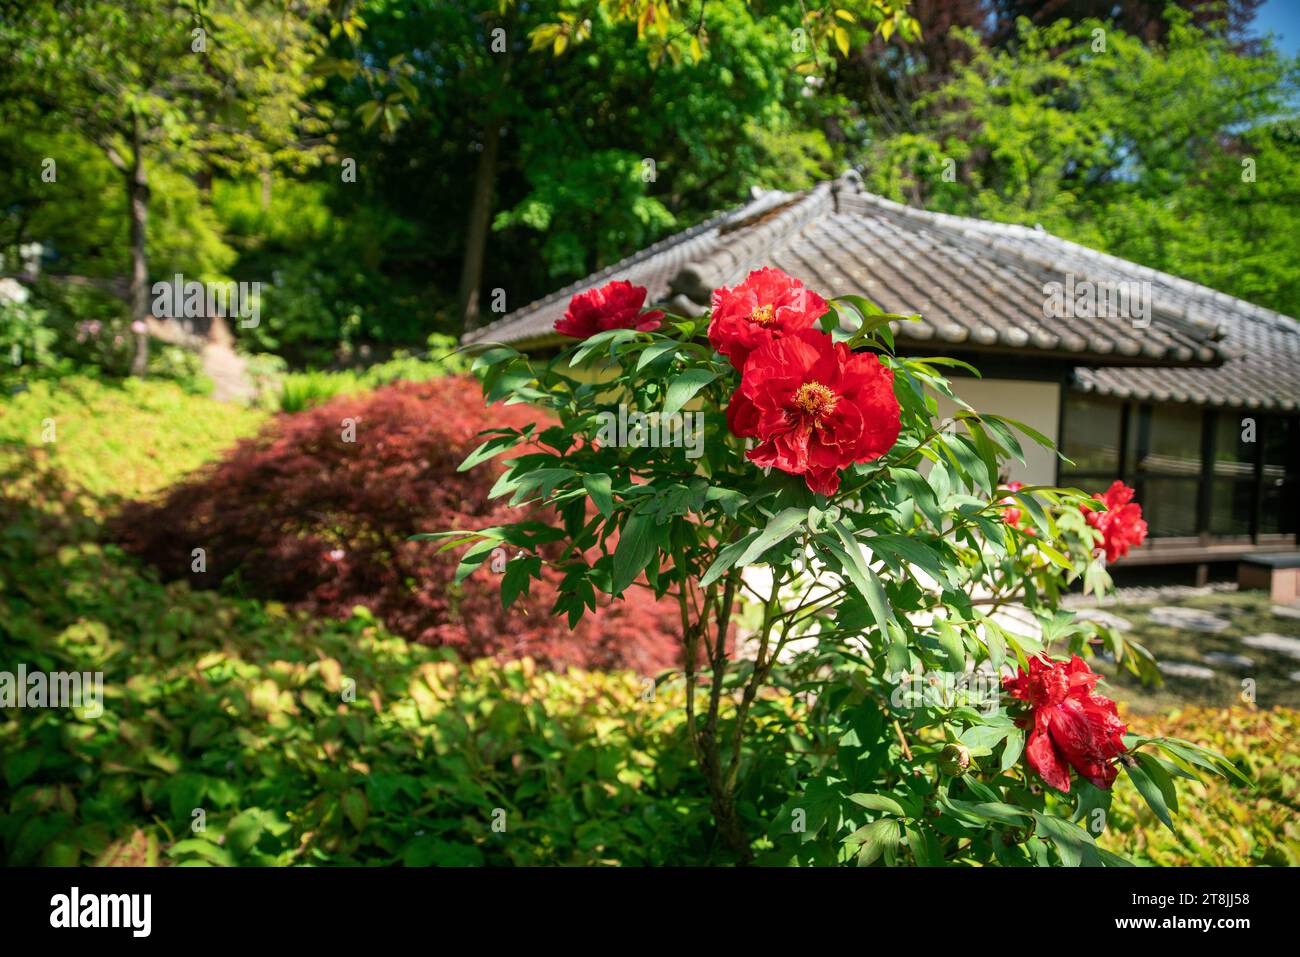 Fantastische rote Pfingstrosen neben dem Teehaus im japanischen Garten Kaiserslautern. Rechts roter Ahorn (japanische Karte[le) mit sezierten Blättern. In Distanzvisi Stockfoto